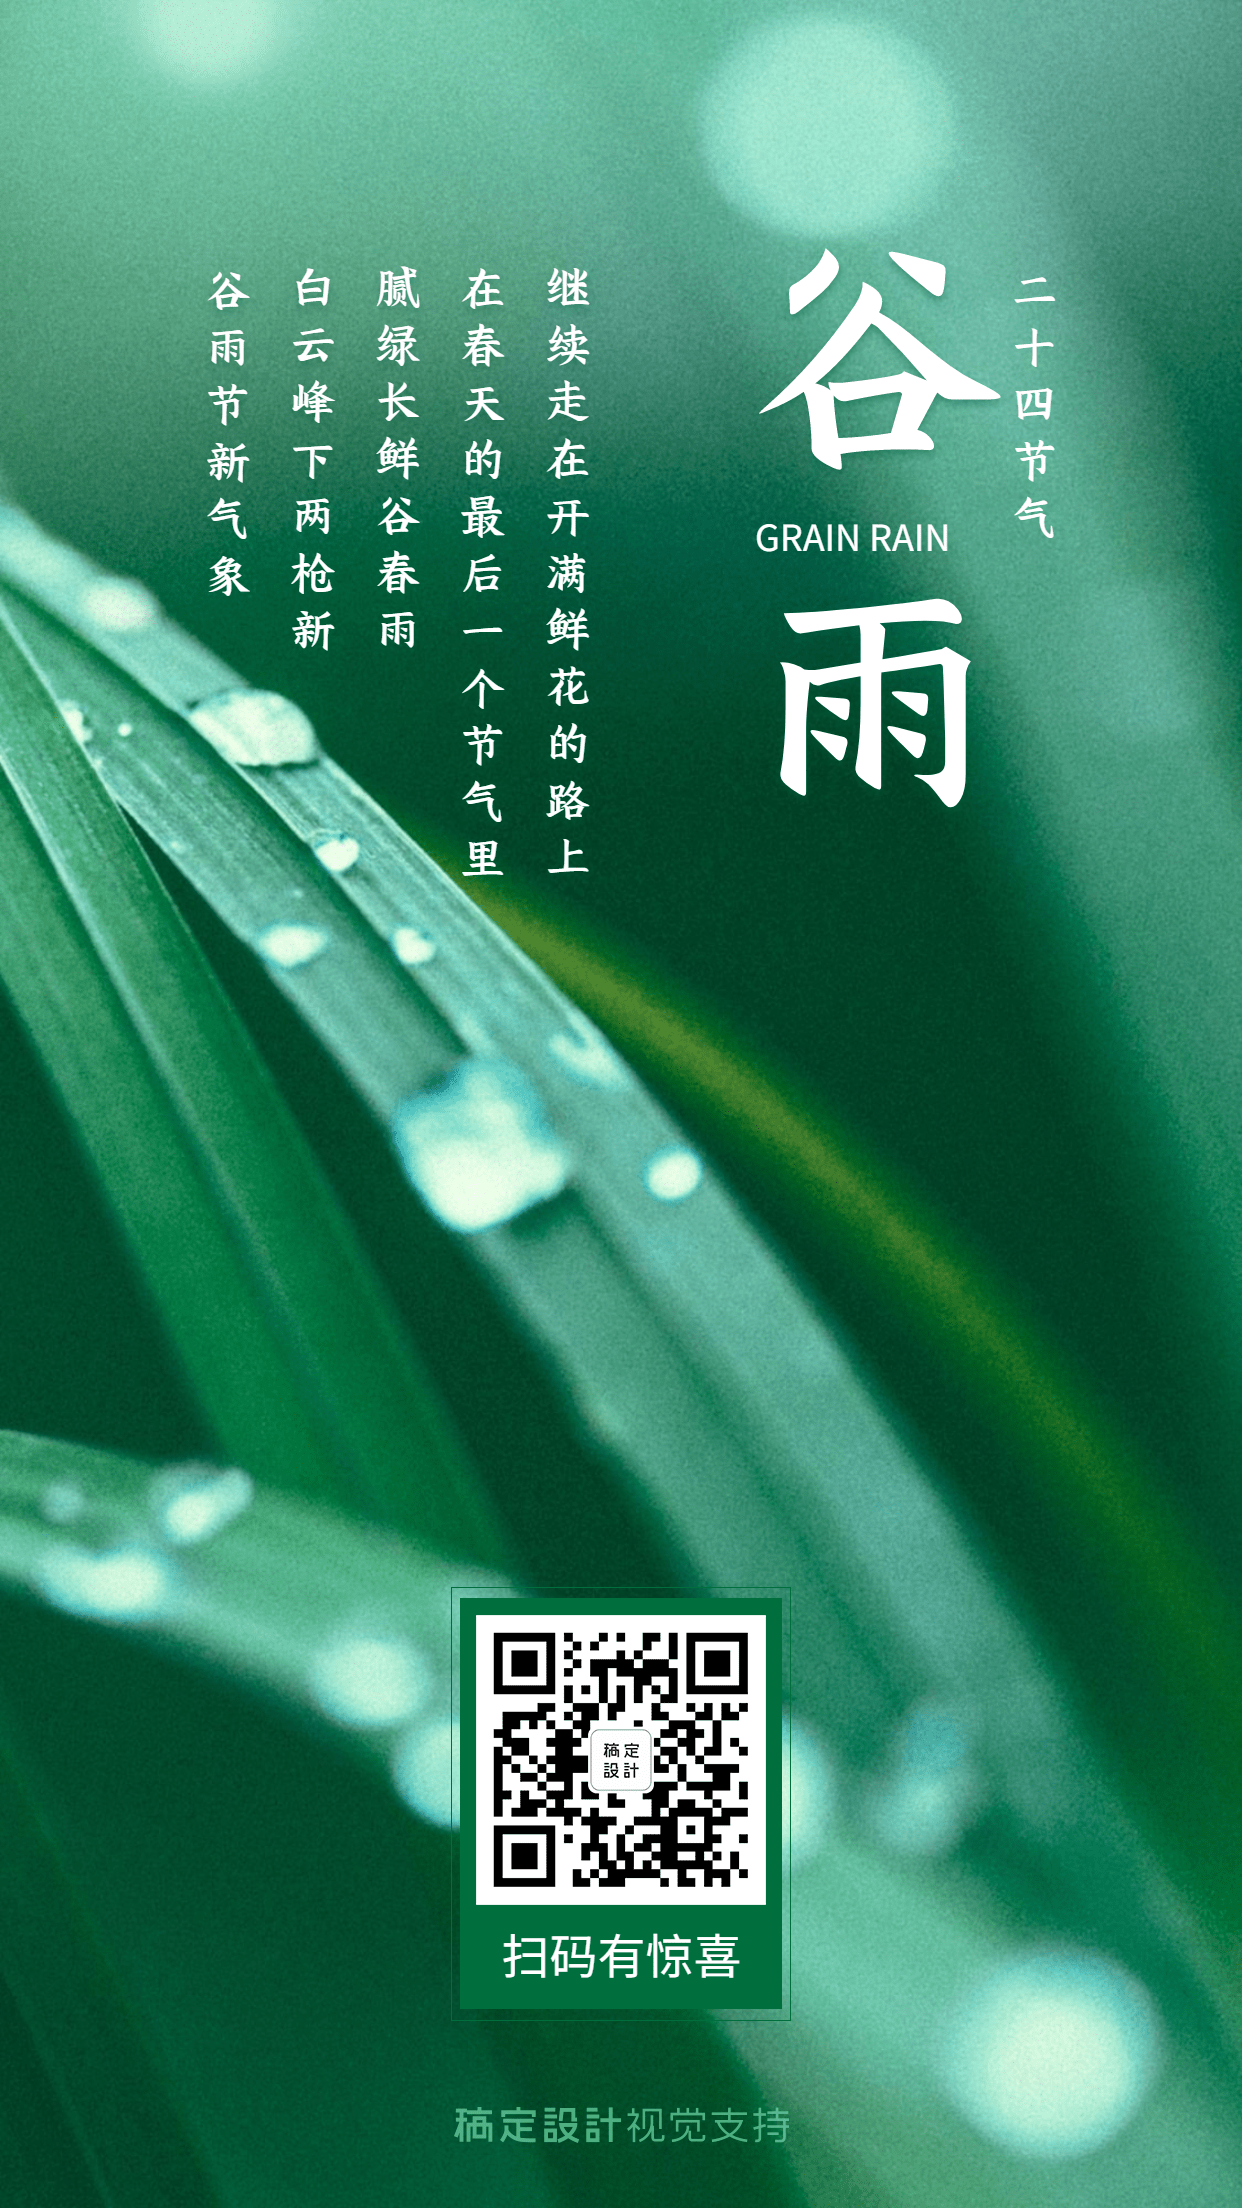 谷雨节气问候祝福宣传海报预览效果